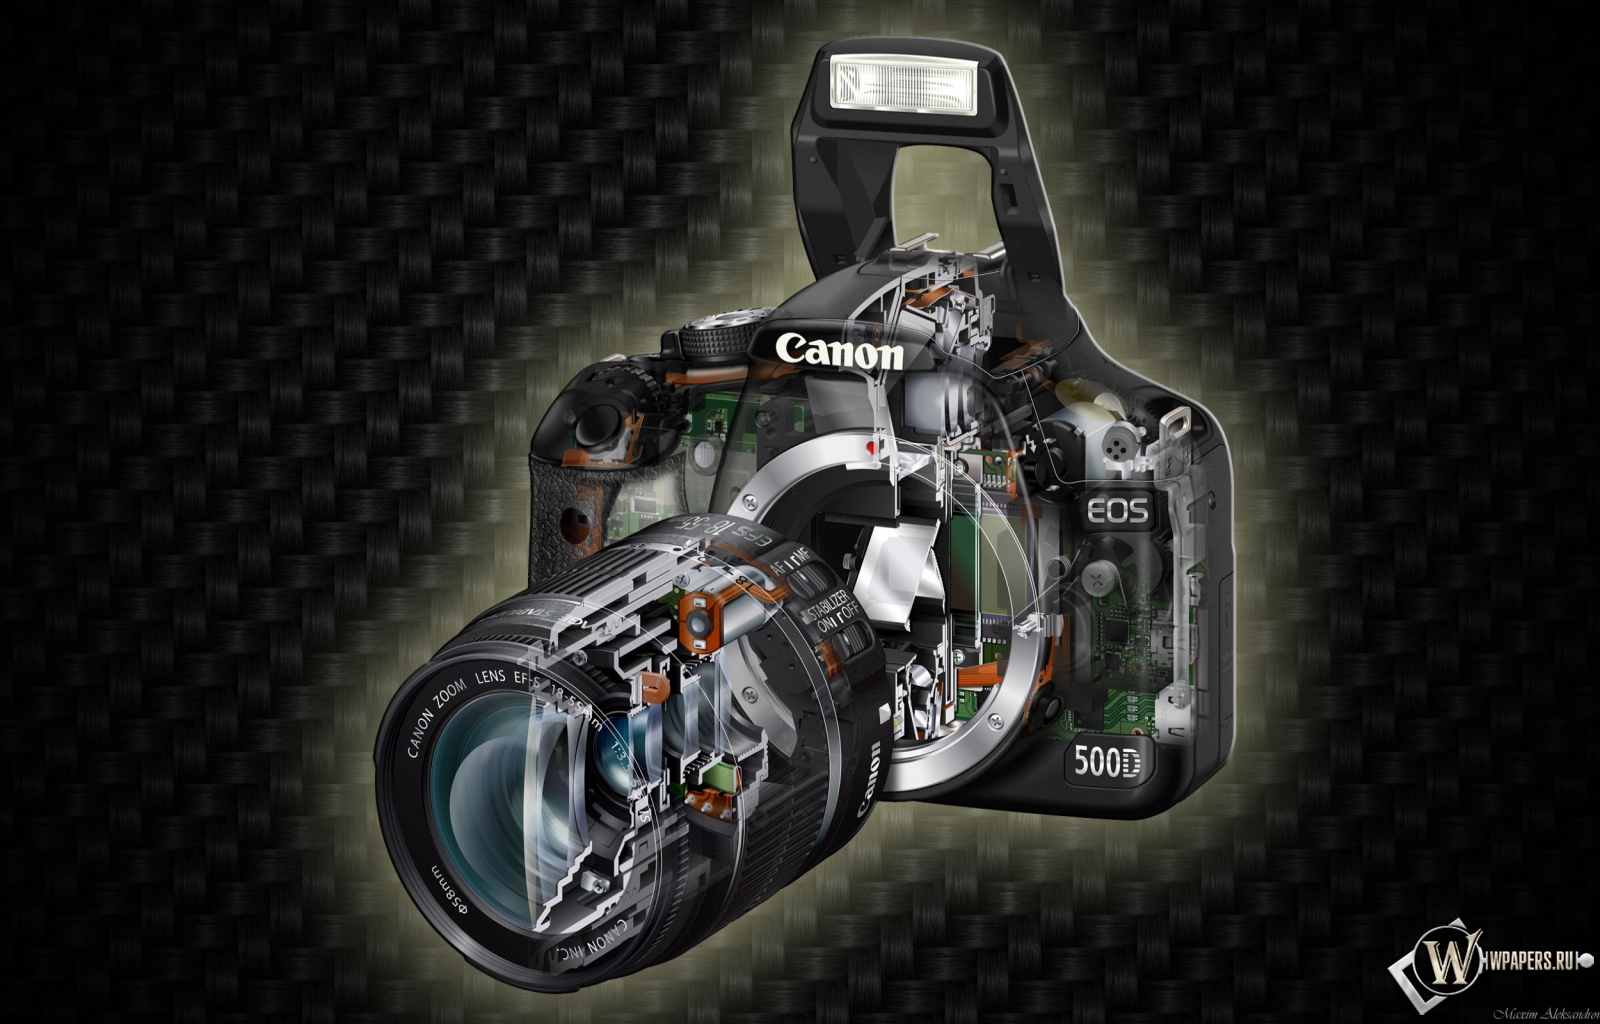 Canon, Eos 500d 1600x1024